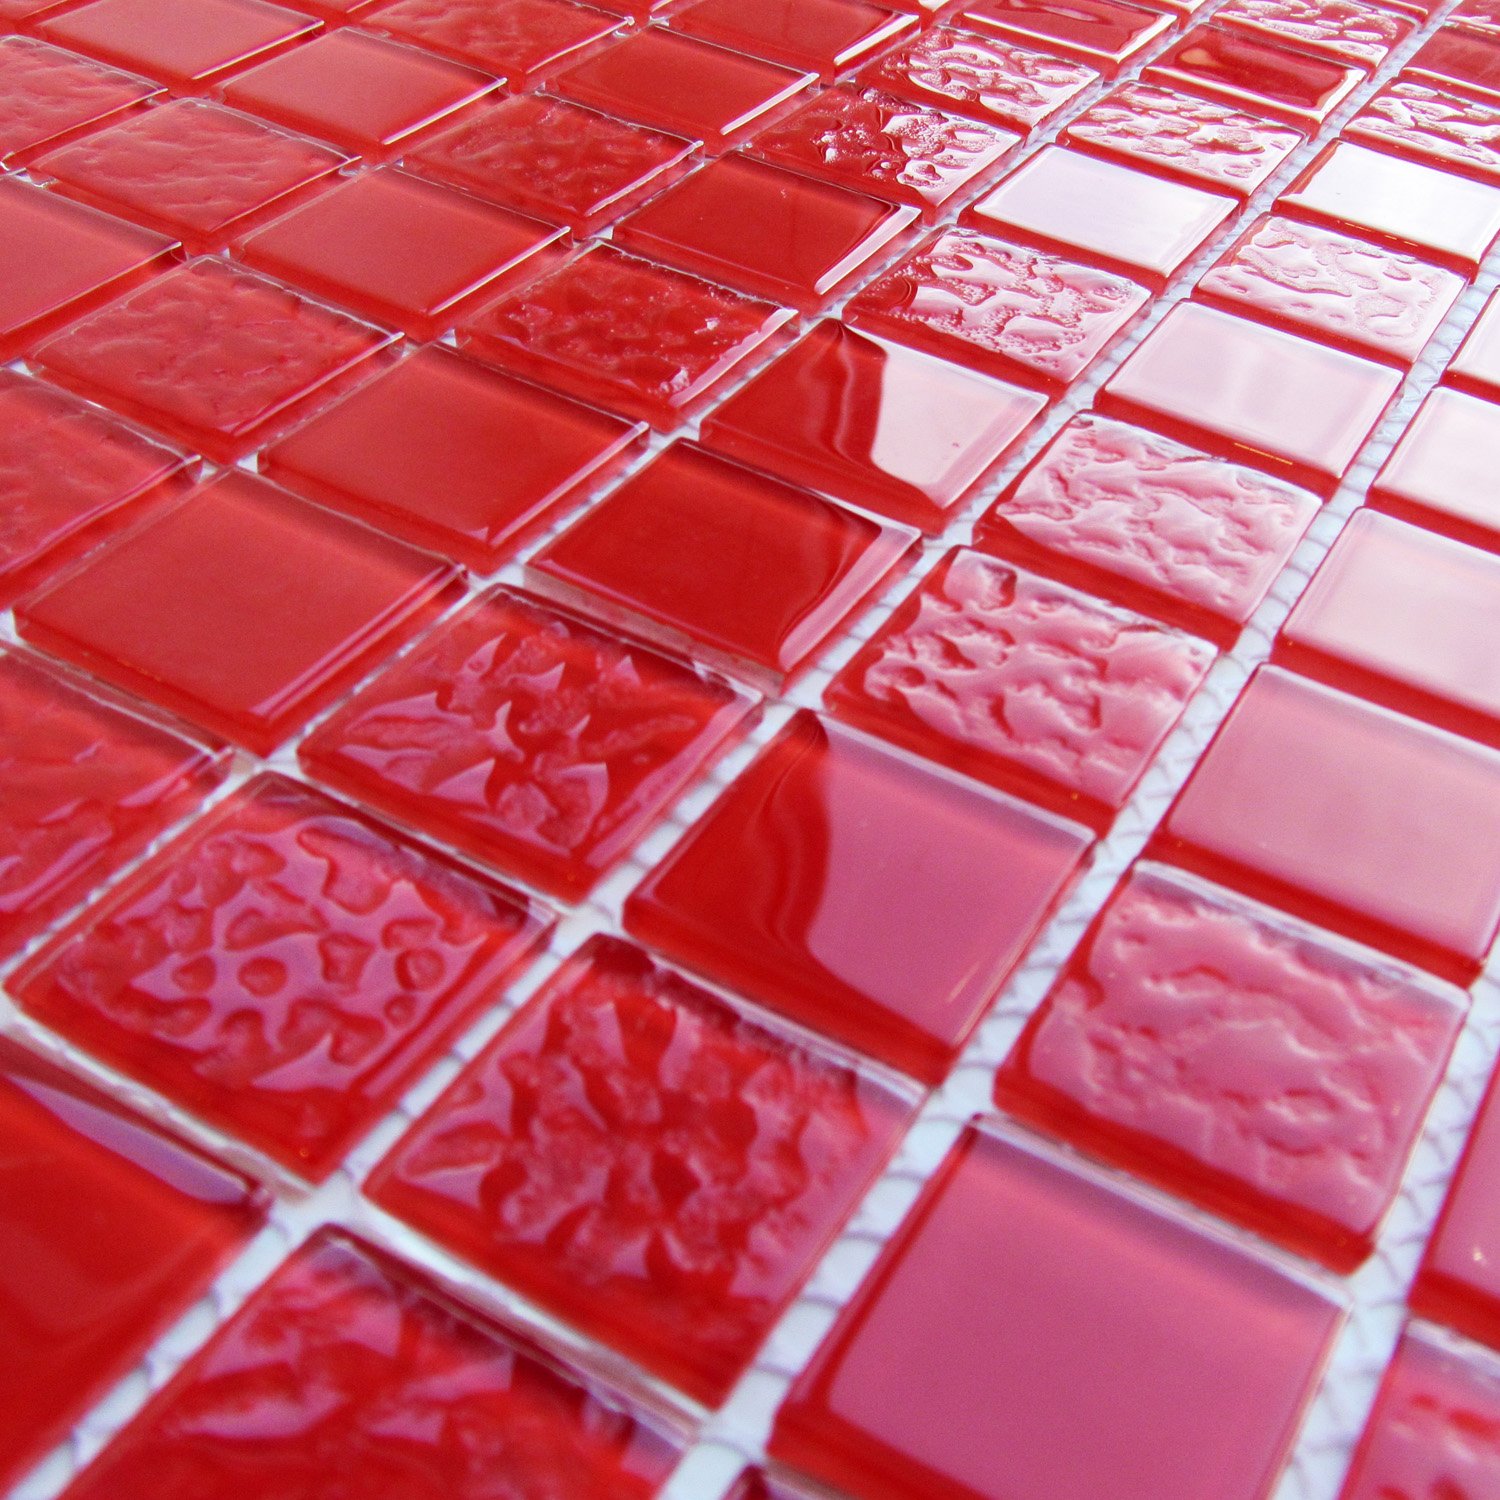 Купить плитку кафеля. Красная плитка. Красная глянцевая плитка. Плитка керамическая красная. Стеклянная плитка красная.